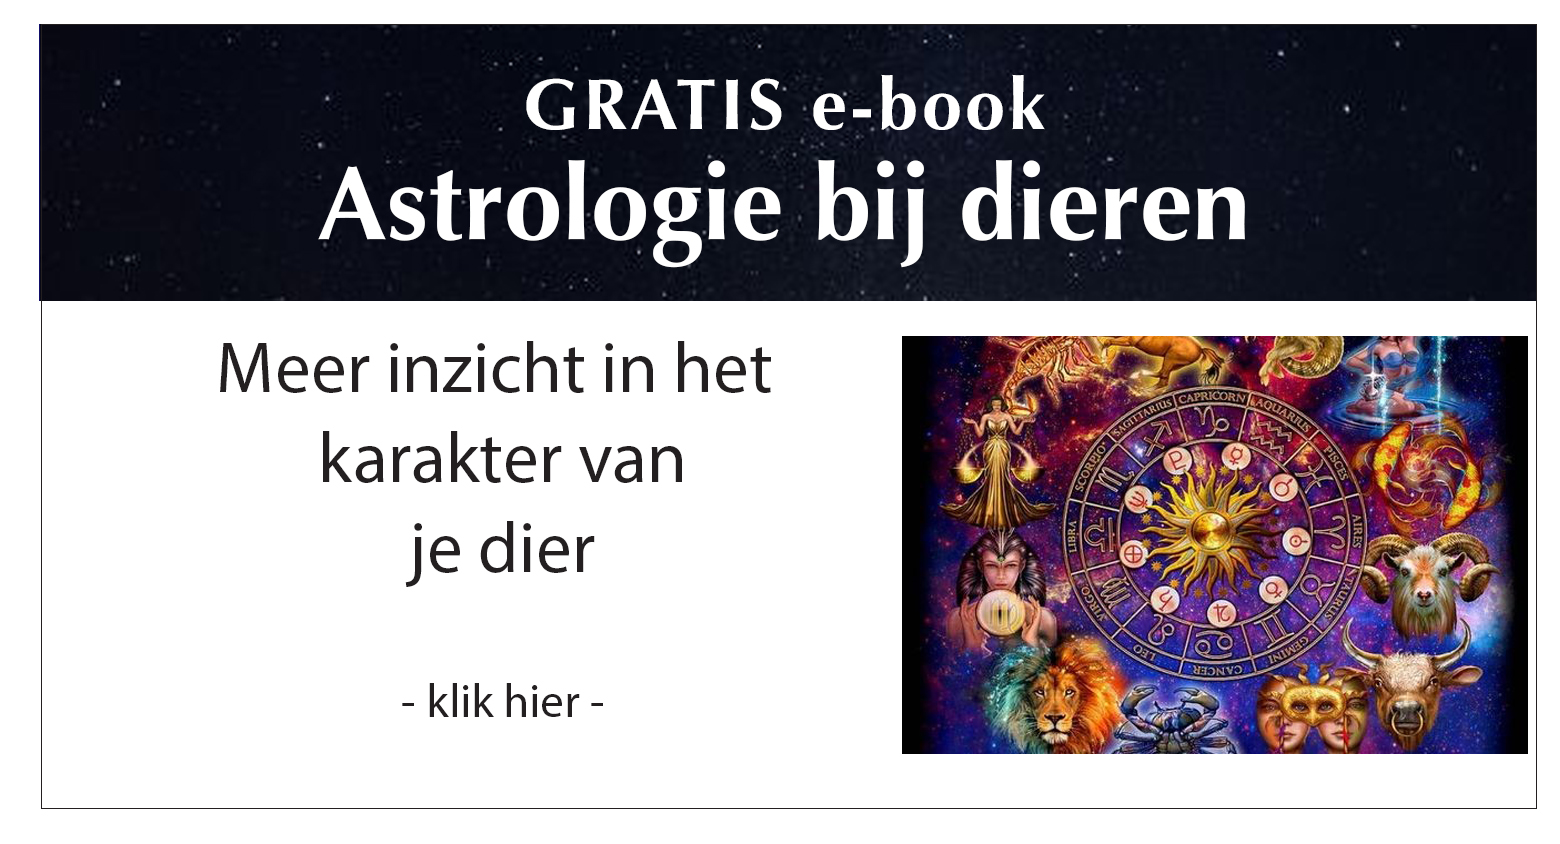 Gratis e-book Astrologie bij dieren